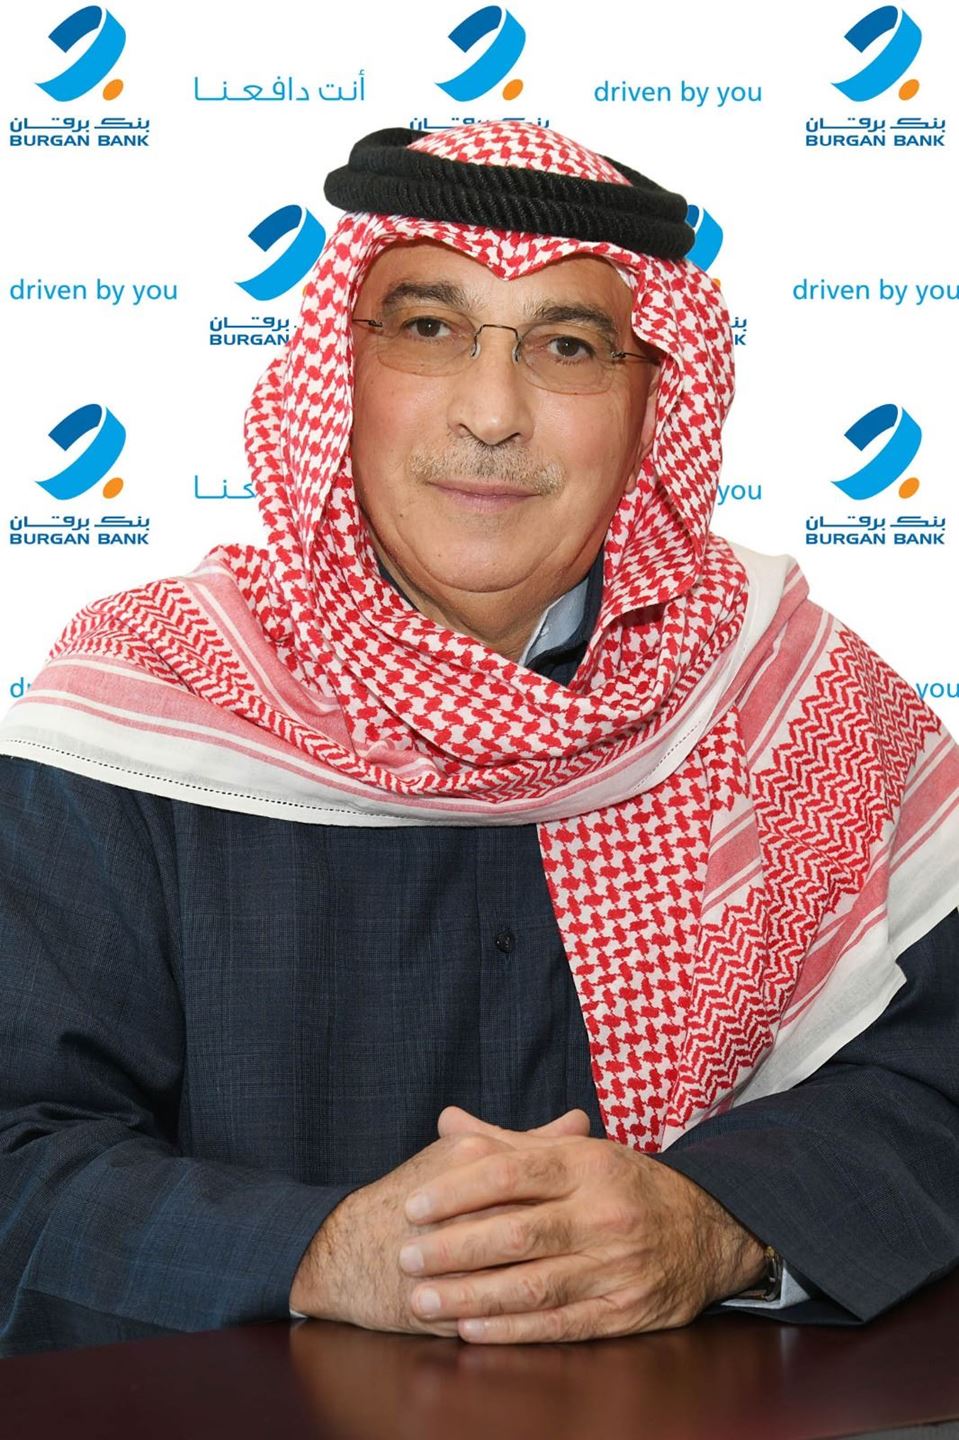 السيد مسعود محمود جوهر حيات، نائب رئيس مجلس الإدارة والرئيس التنفيذي لمجموعة بنك برقان